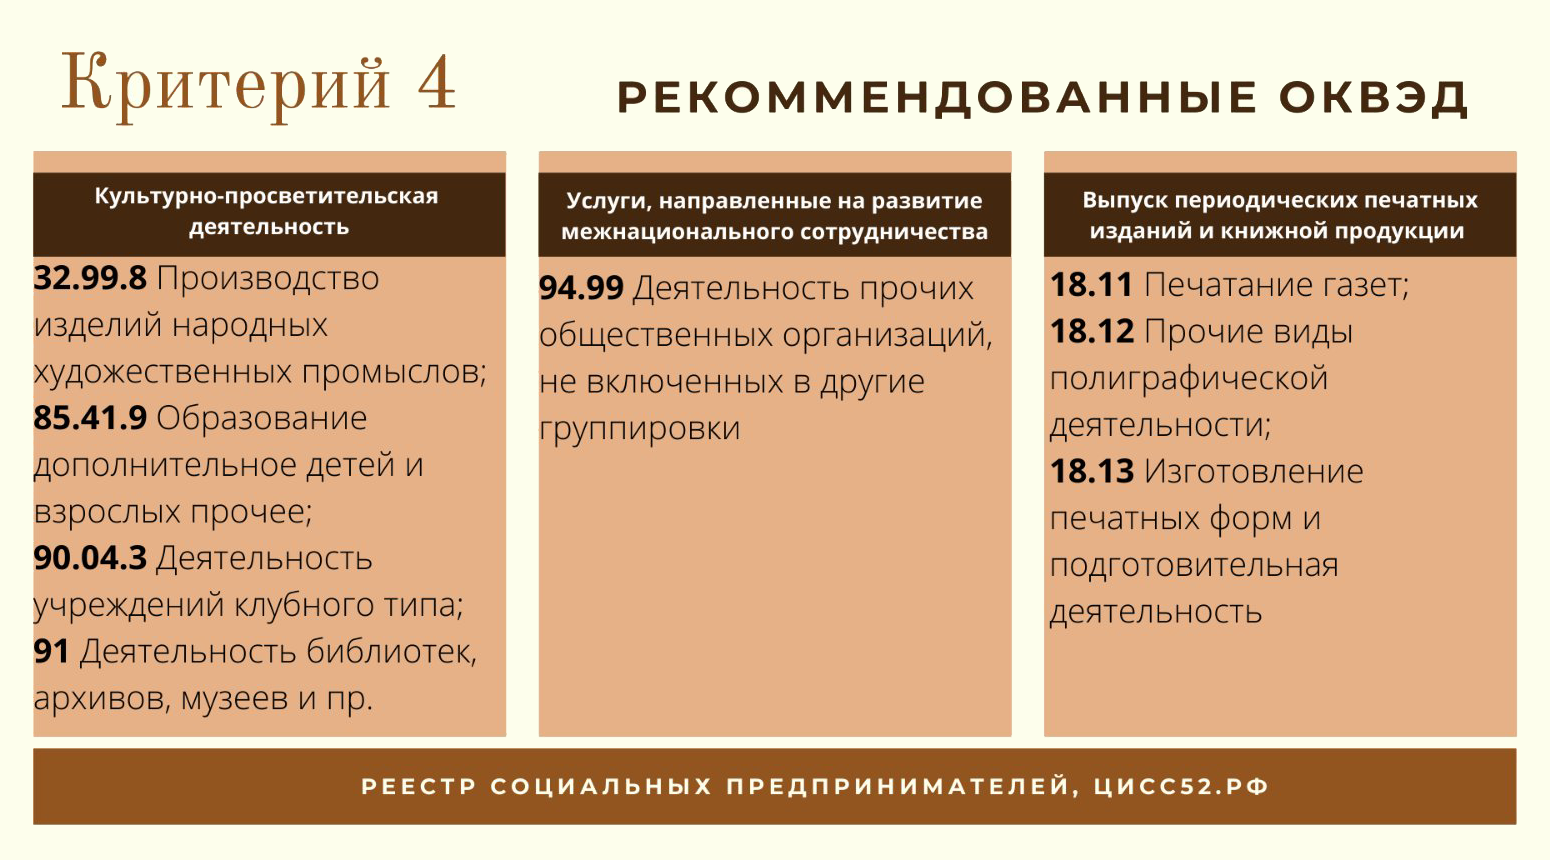 Это рекомендованные коды ОКВЭД для организаций и ИП, которые решают социальные проблемы. Источник: cissno52.ru